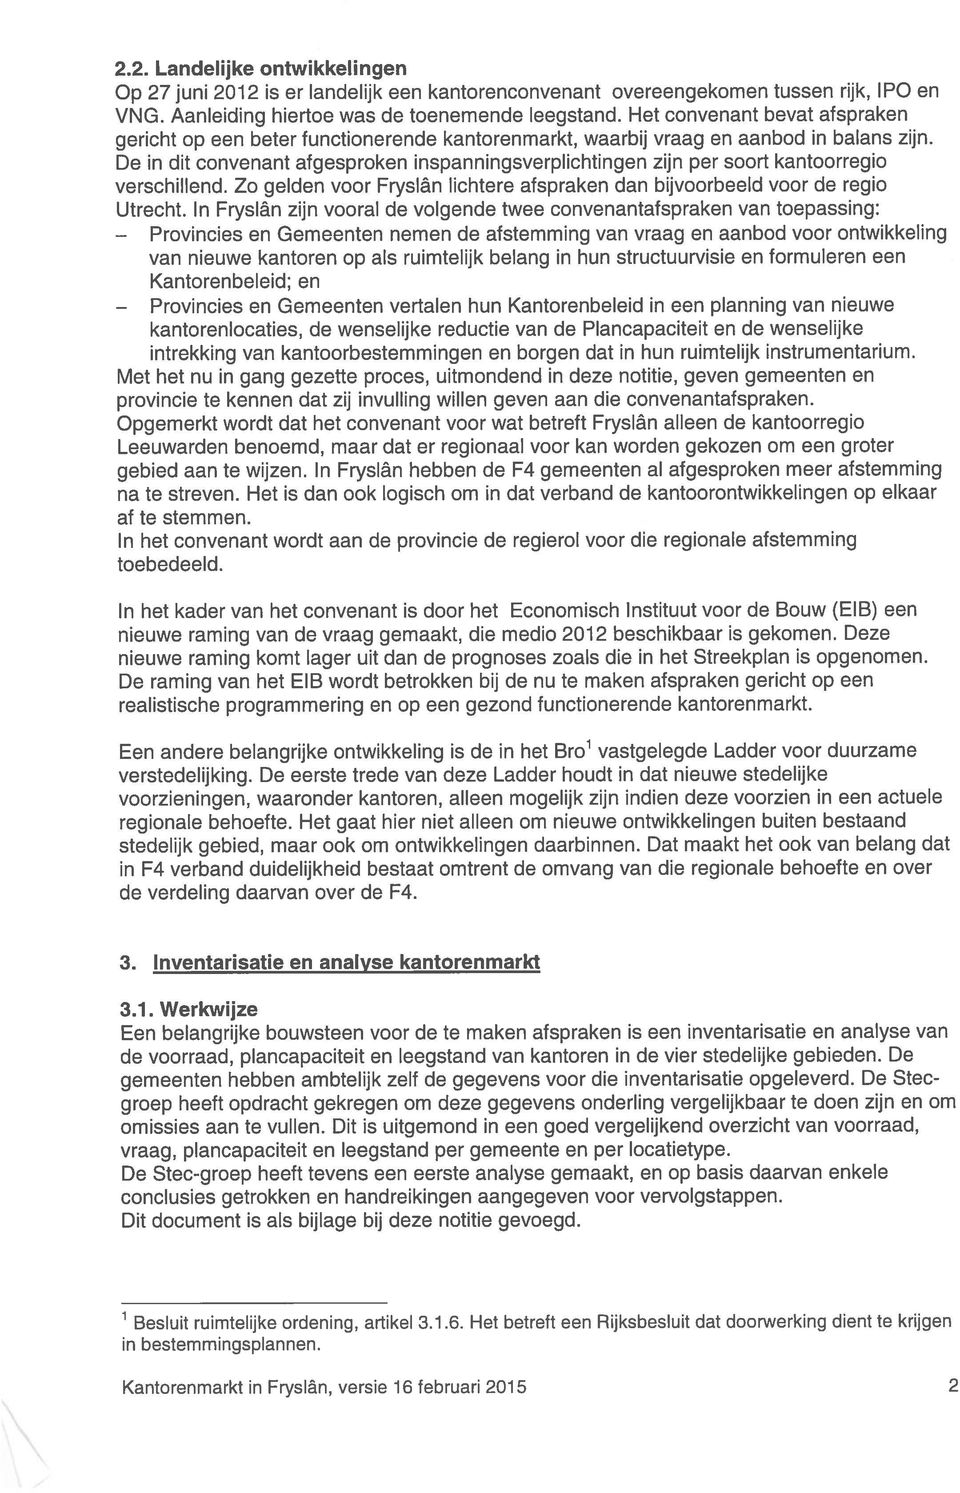 De in dit convenant afgesproken inspanningsverplichtingen zijn per soort kantoorregio verschillend. Zo gelden voor Fryslân lichtere afspraken dan bijvoorbeeld voor de regio Utrecht.